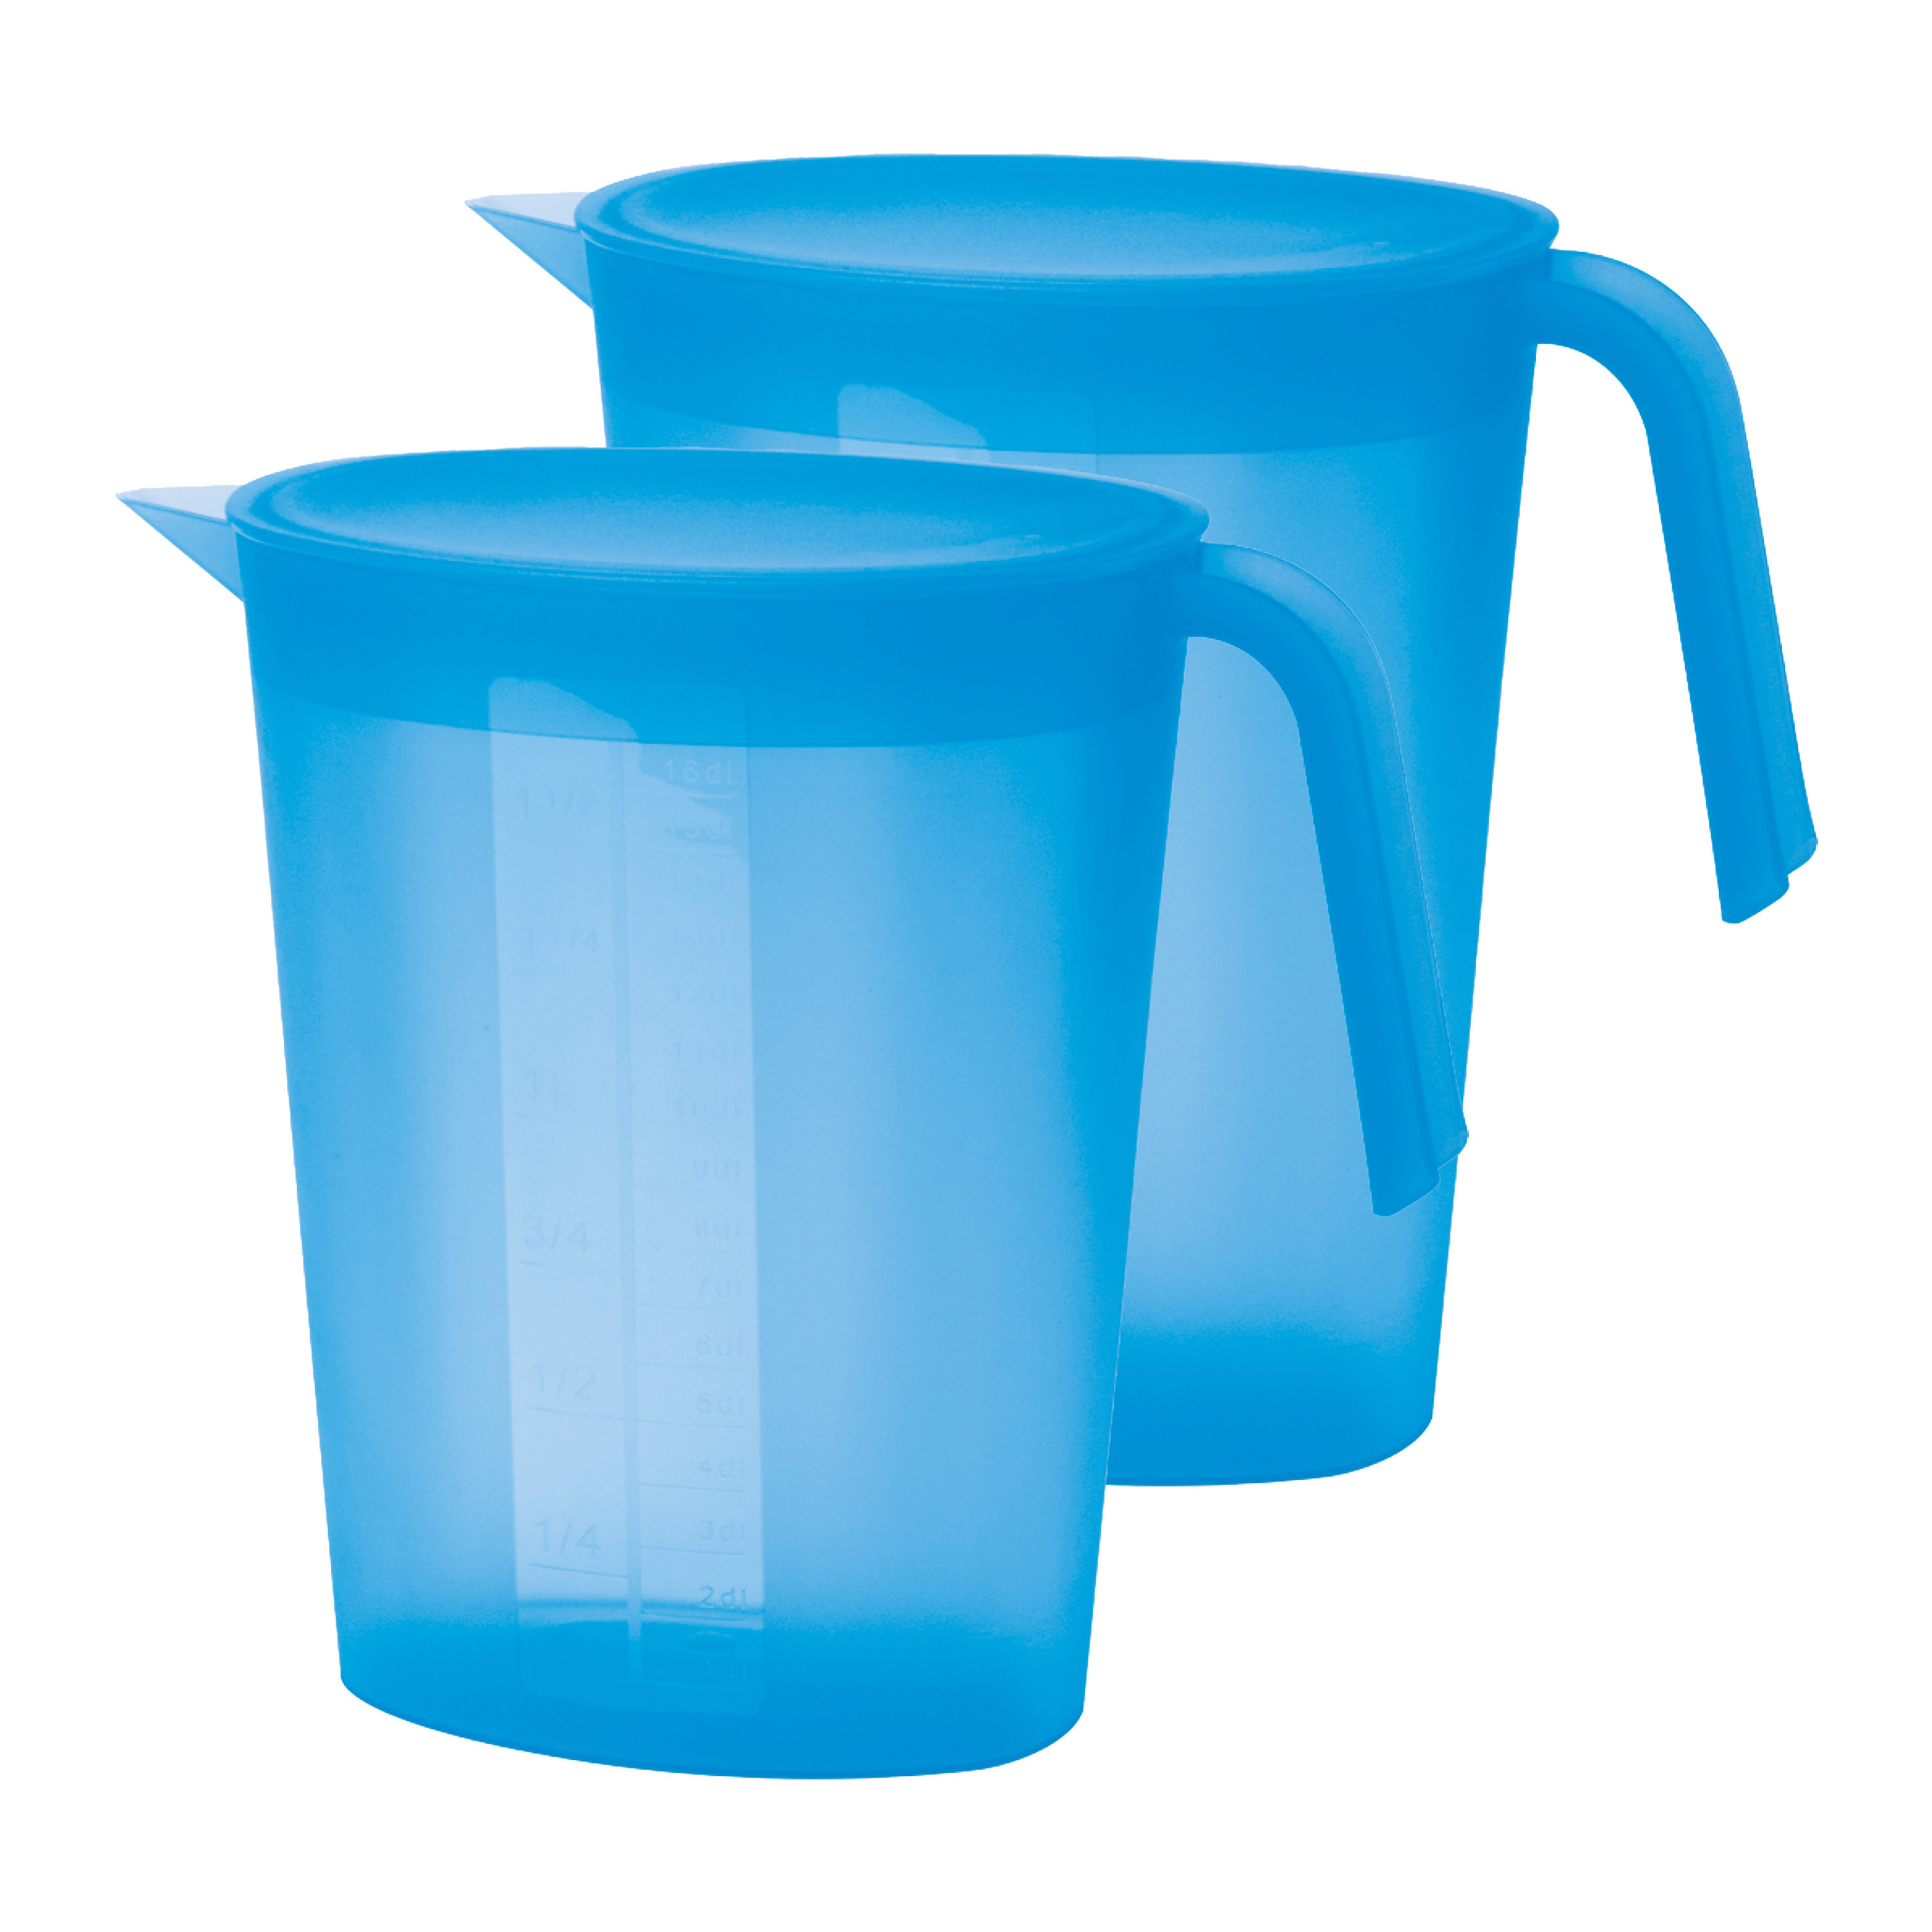 Juypal Hogar Schenkkan/waterkan met deksel - 2x - blauw - 1,75 liter - kunststof - L22 x H20 cm -